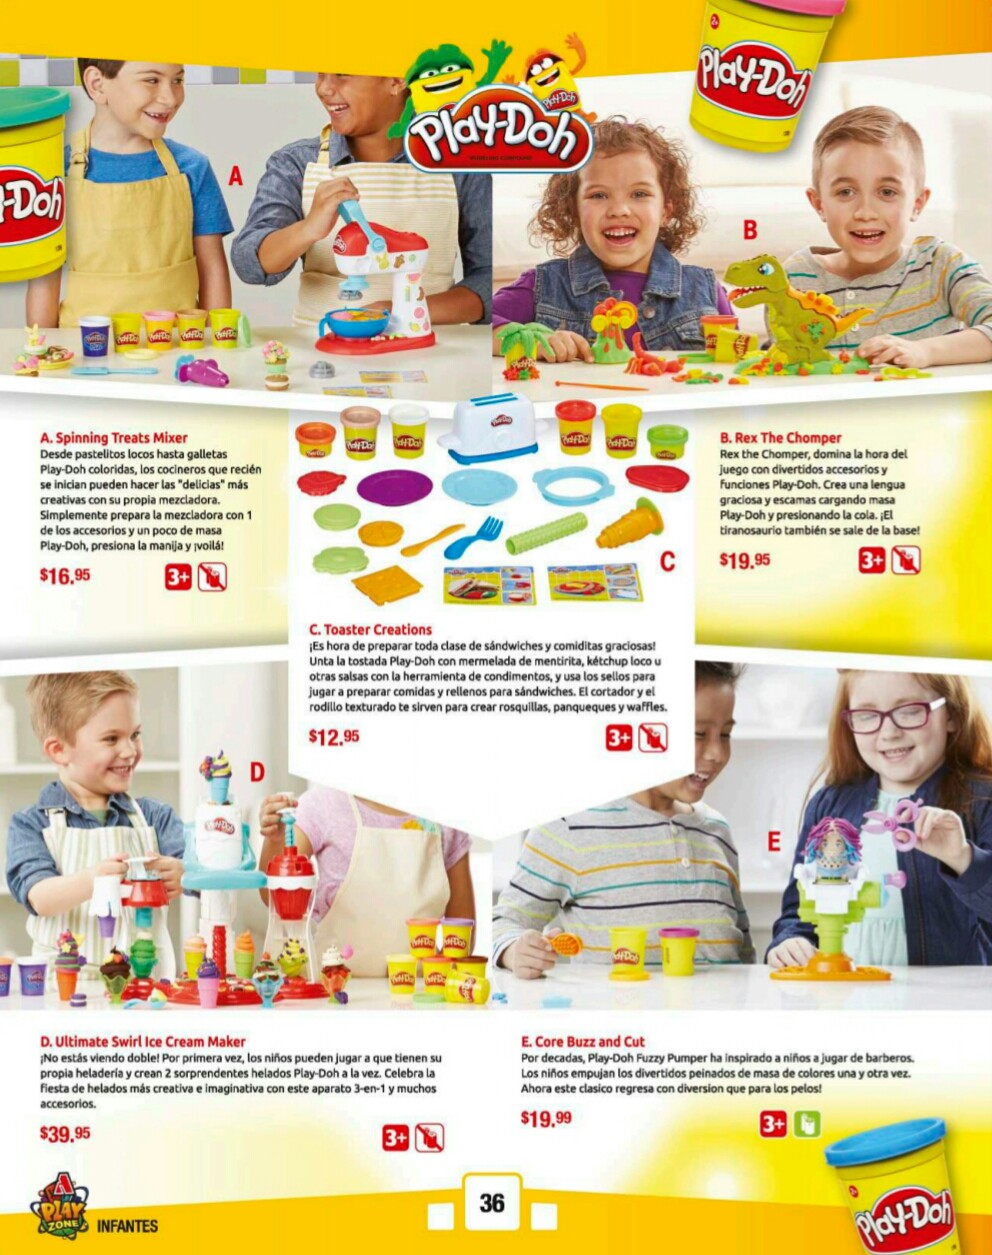 Catalogos juguetes farmacia Arrocha 2018 p36